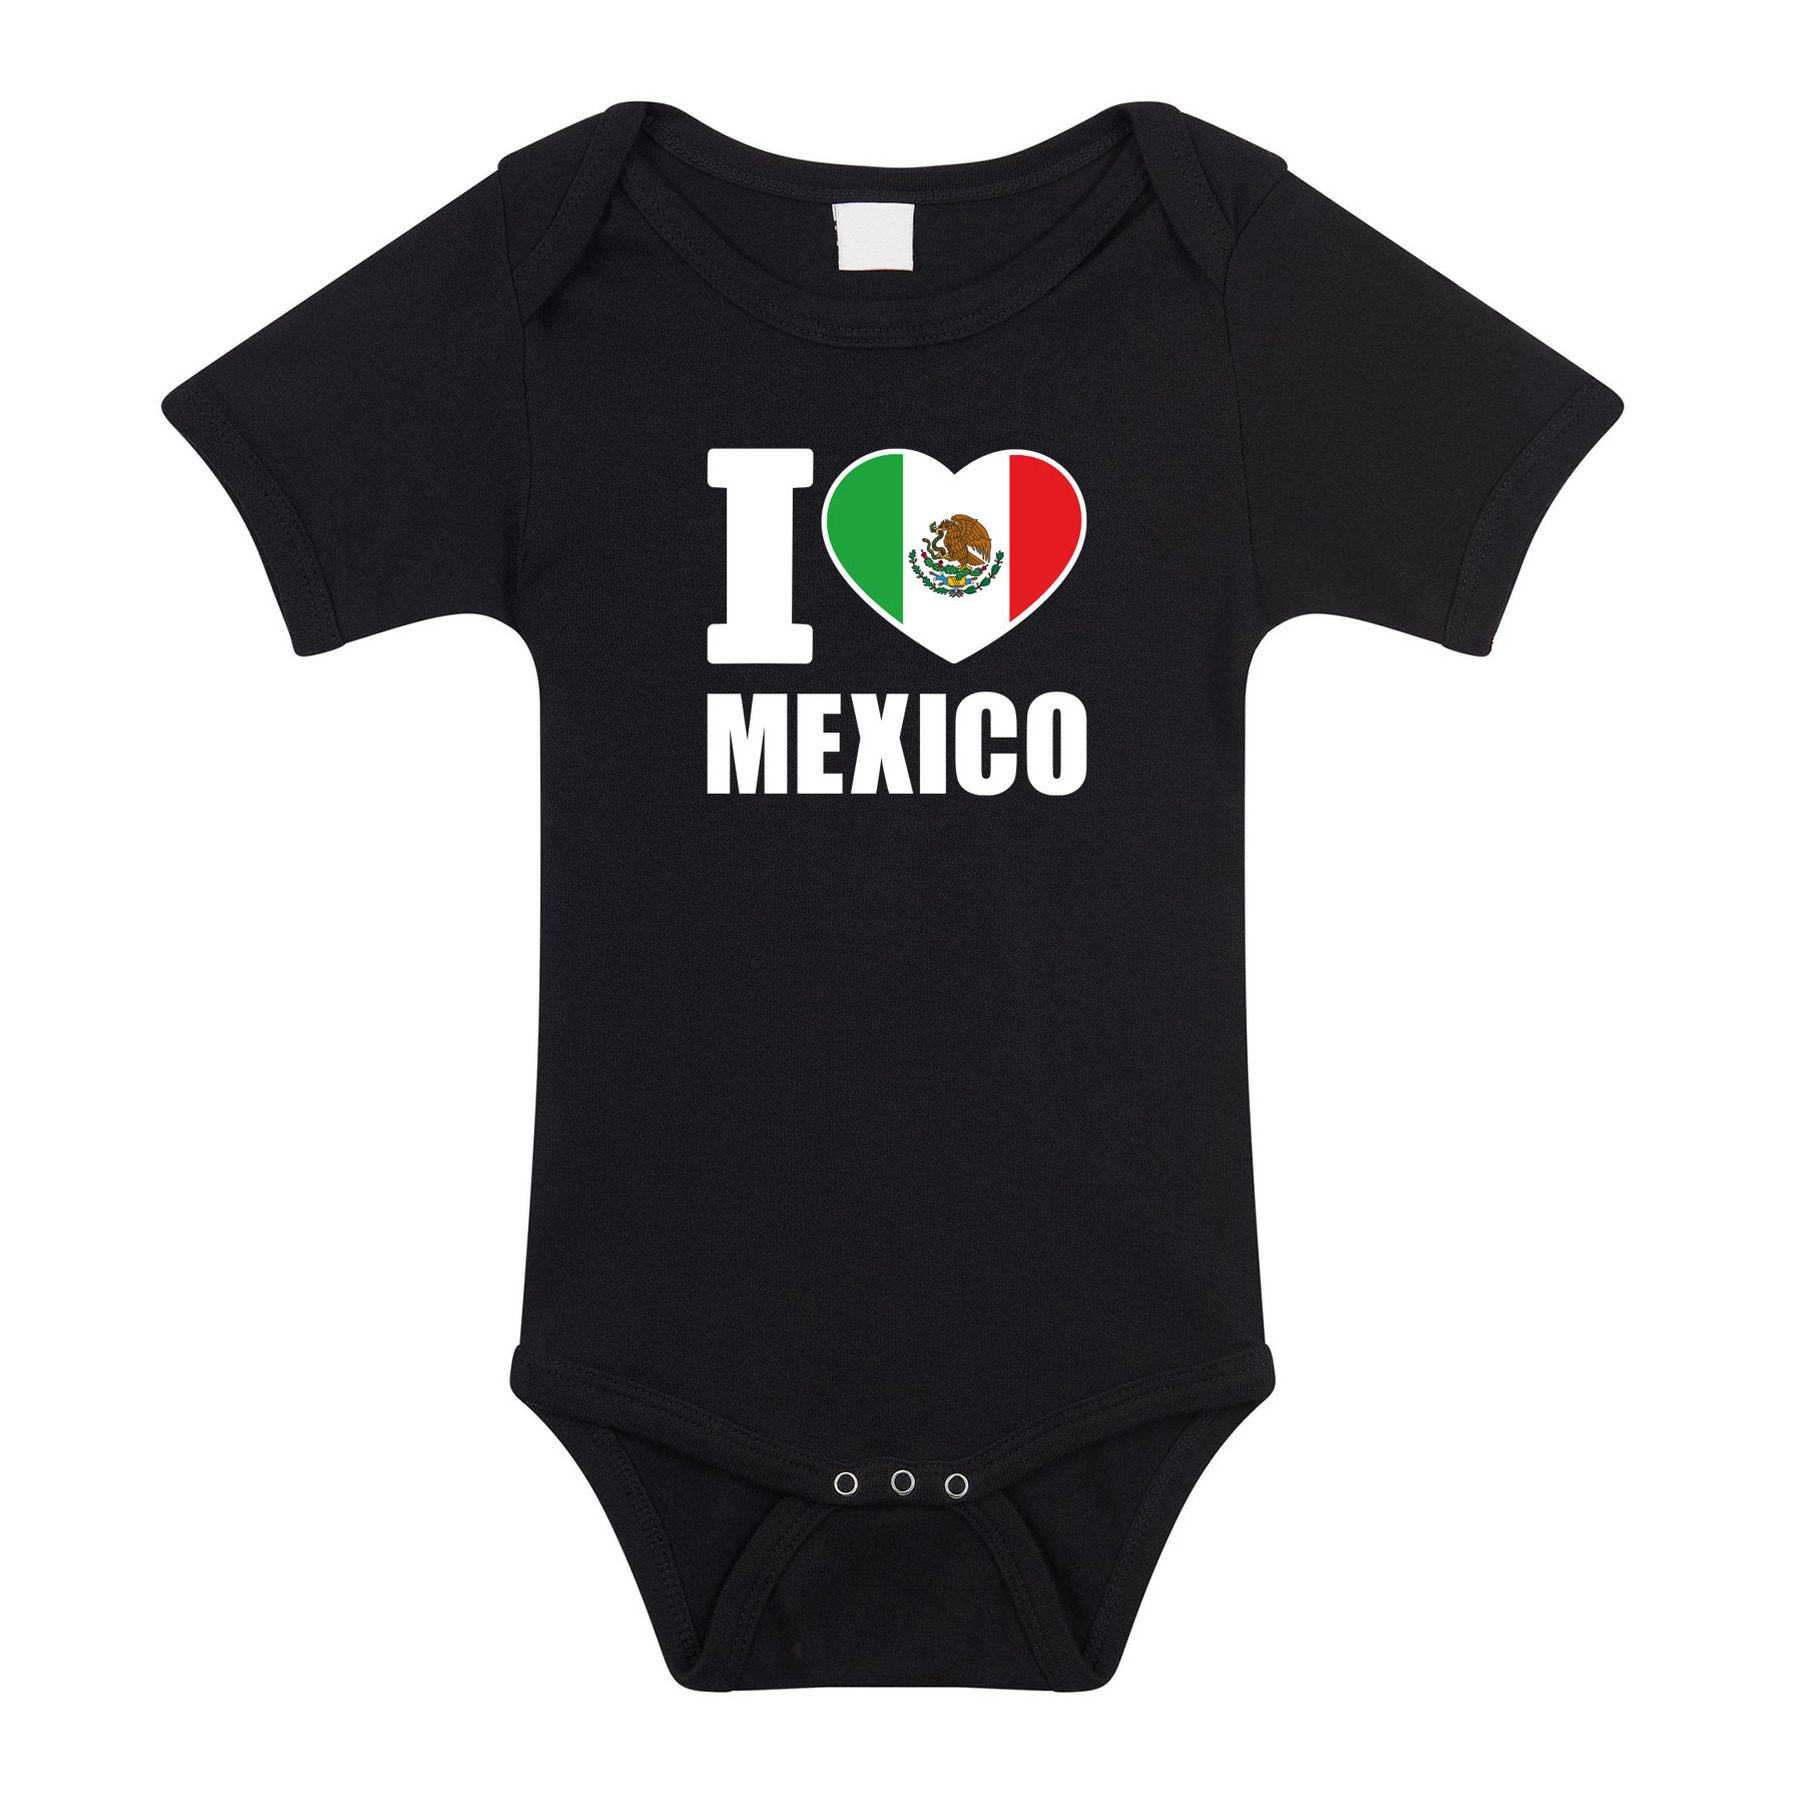 I love Mexico baby rompertje zwart jongen-meisje